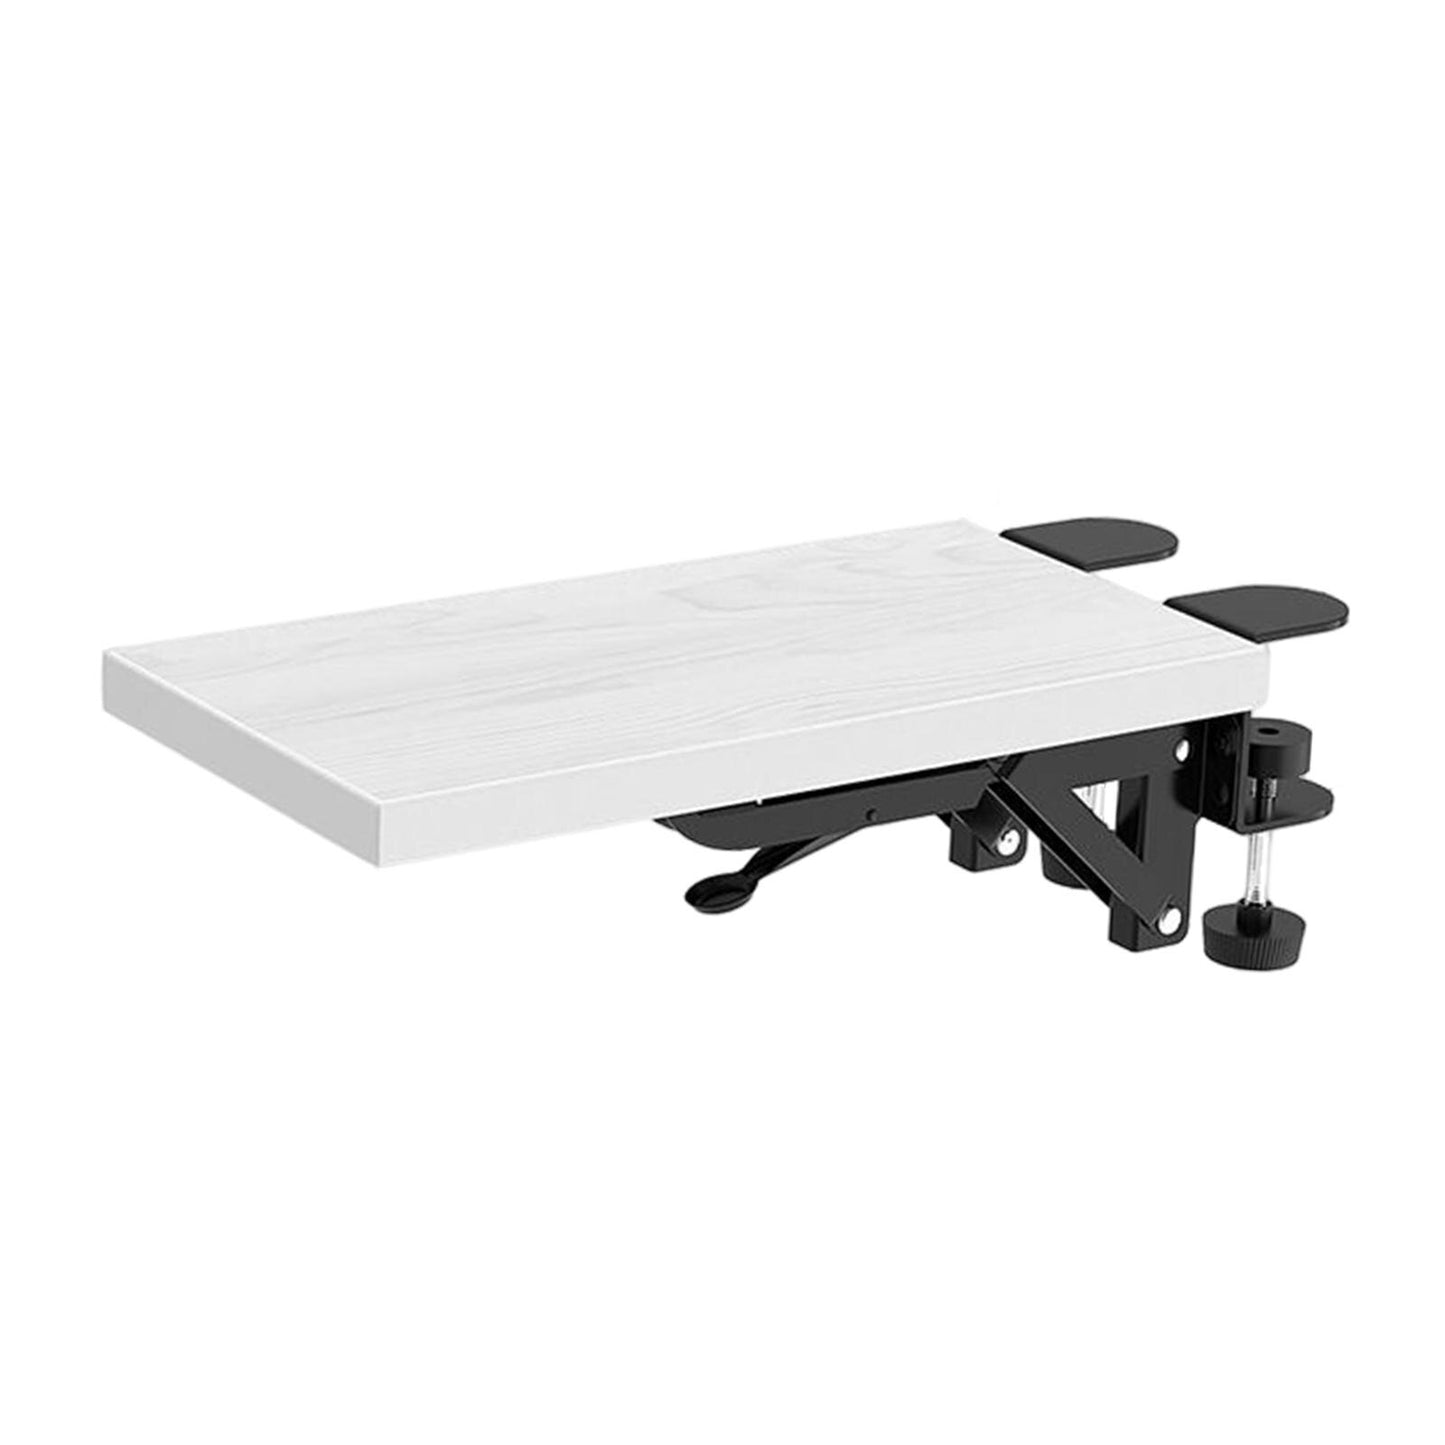 Wood Computer Arm Rest Ergonomic Mouse Pad Holder Foldable Comfortable Elbow Support Armrest Rack for Home Table Desktop Desk